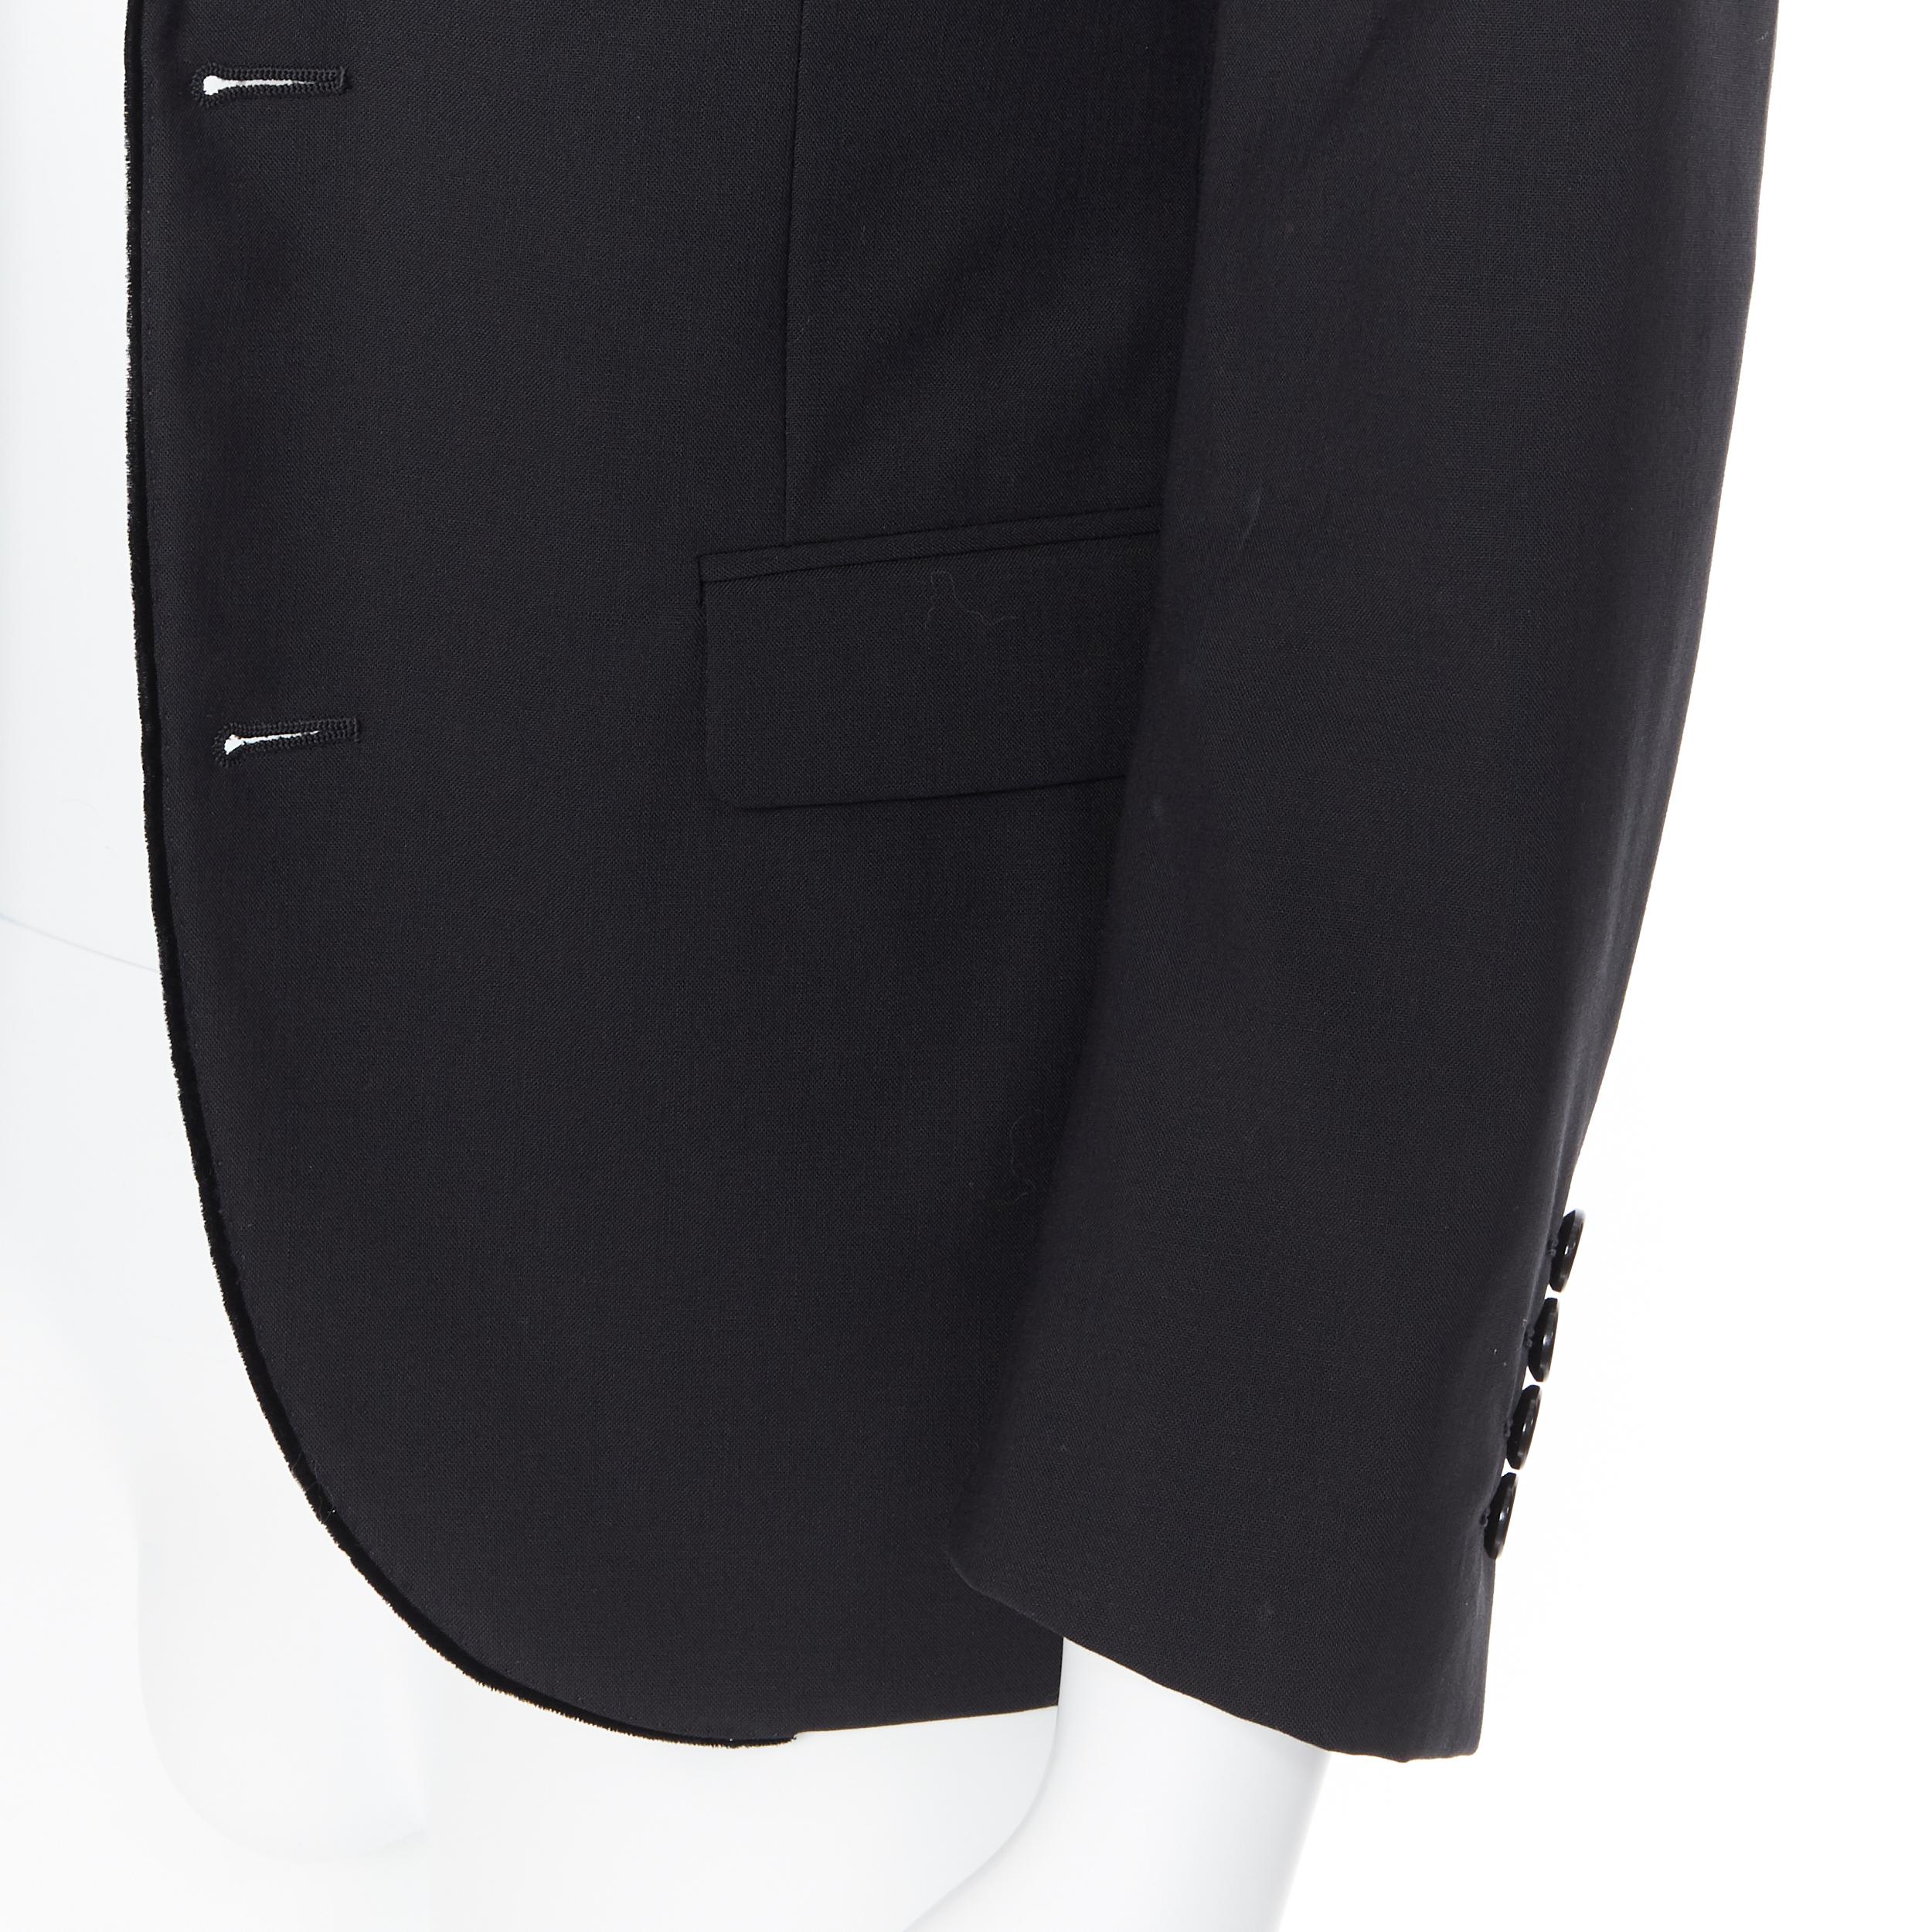 LANVIN ALBER ELBAZ wool blend black velvet peak lapel formal blazer jacket FR44 2